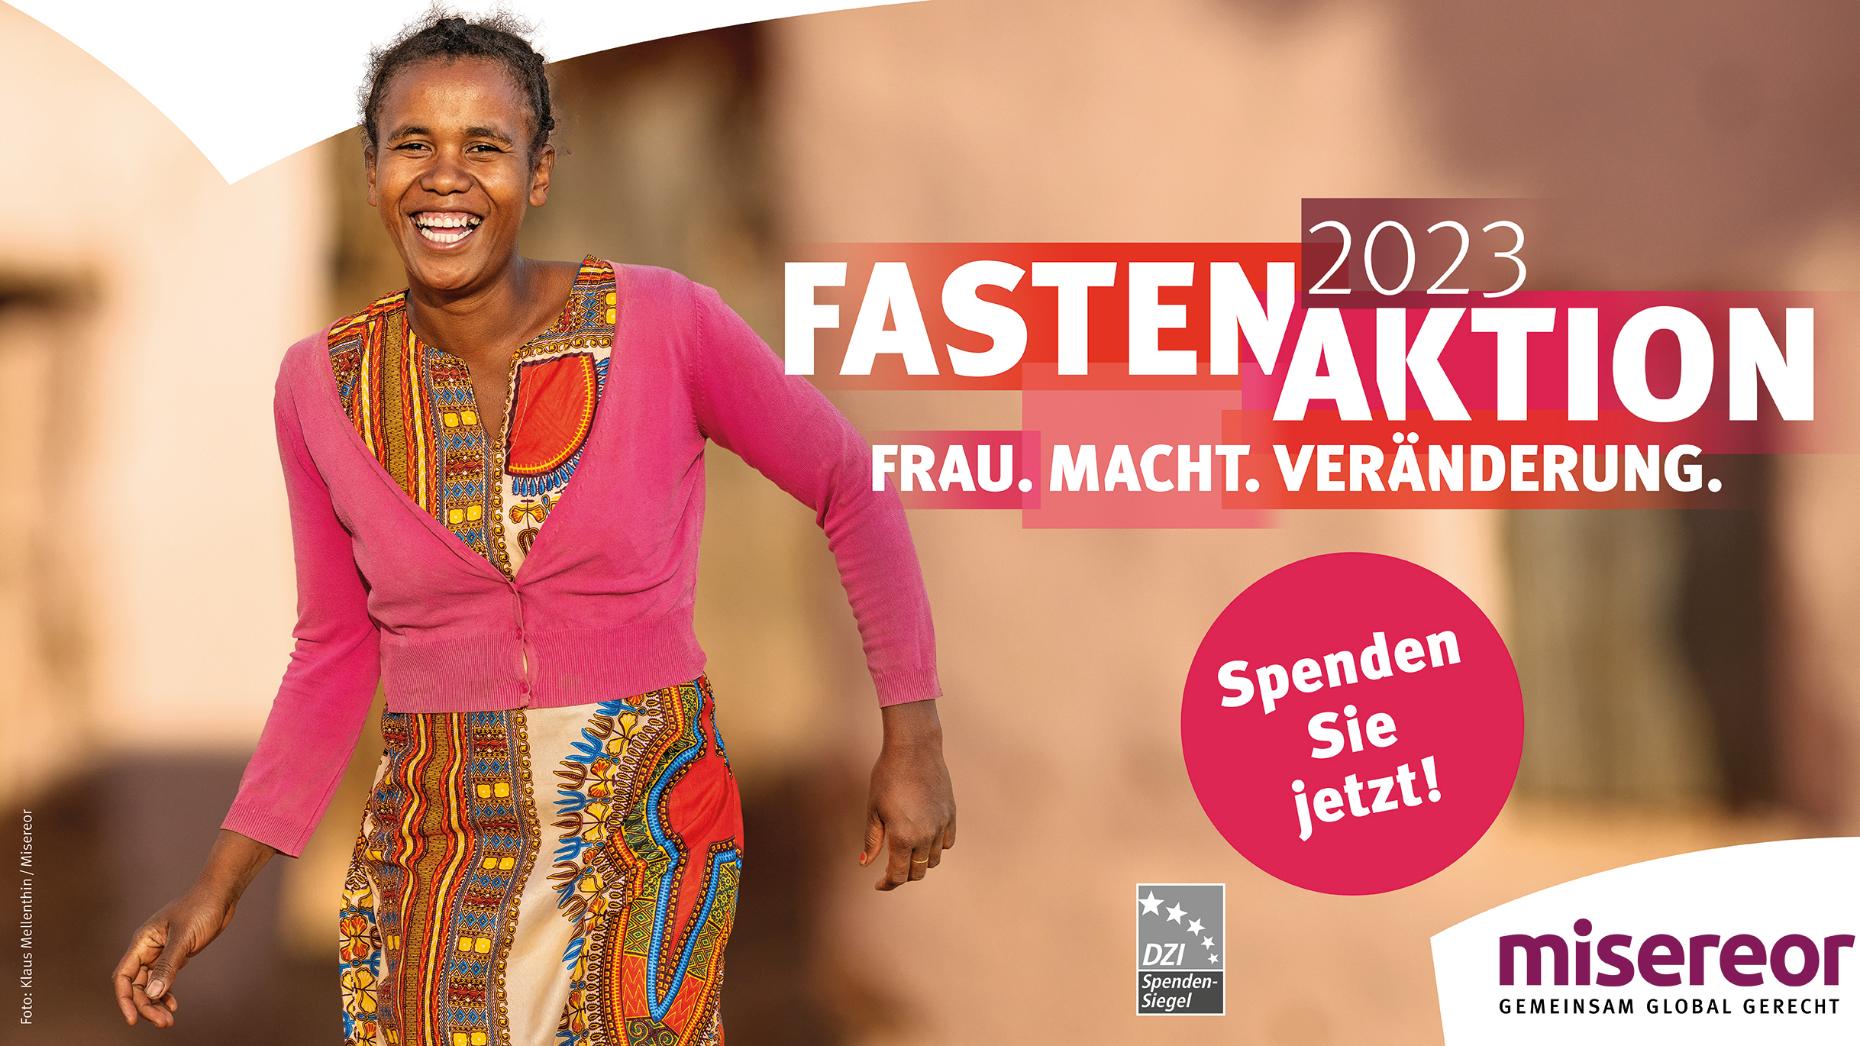 Plakatmotiv: Afrikanische Frau, die lächelnd auf die Kamera zuläuft. Daneben steht: 'Fastenaktion 2023 - Frau.Macht.Veränderung.'